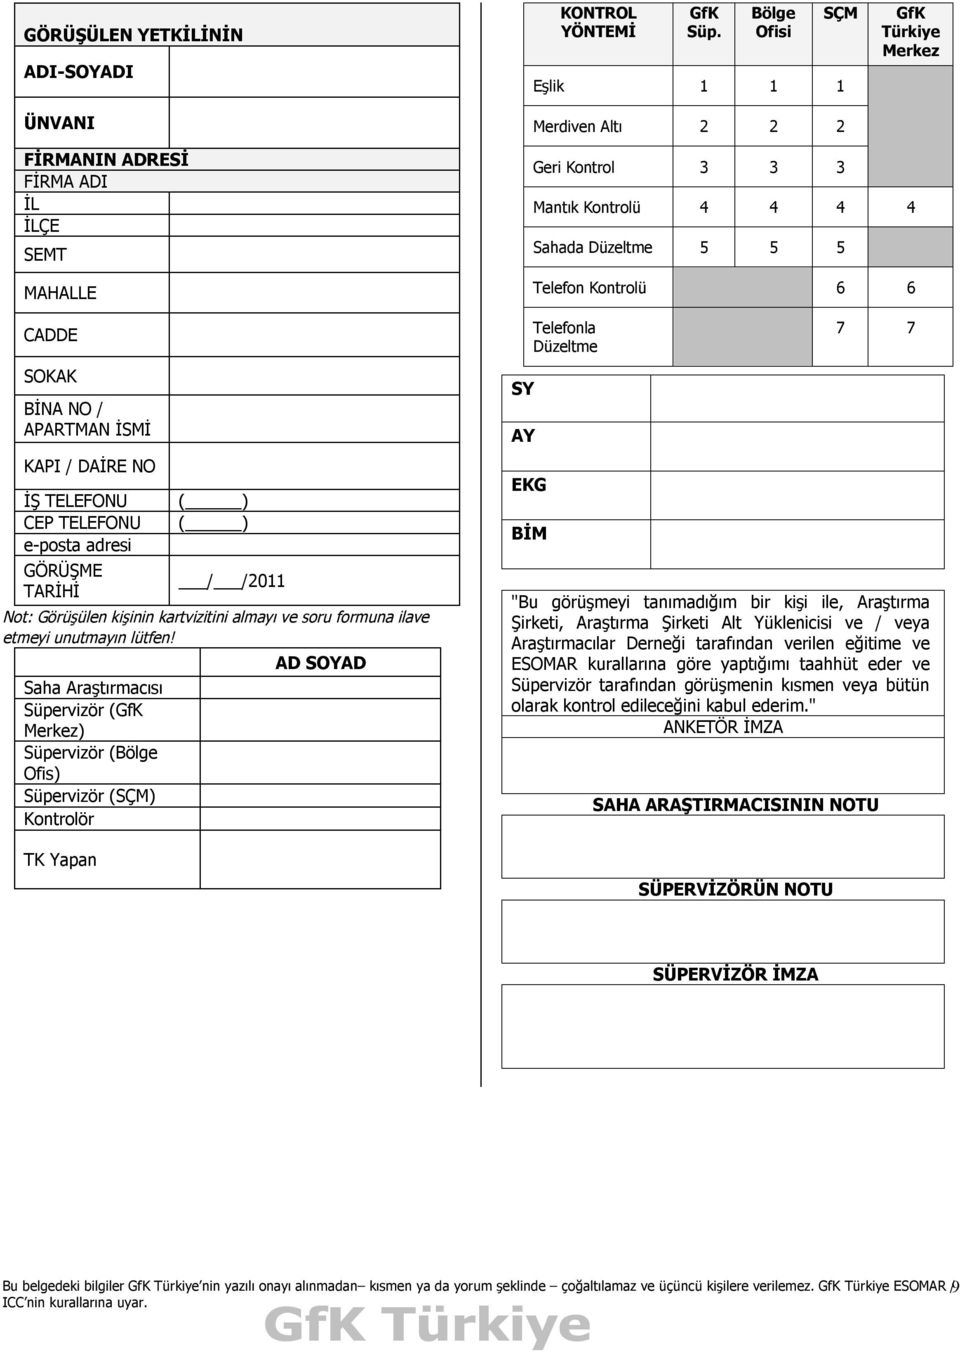 adresi GÖRÜŞME TARİHİ ( ) ( ) / /2011 Not: Görüşülen kişinin kartvizitini almayı ve soru formuna ilave etmeyi unutmayın lütfen!